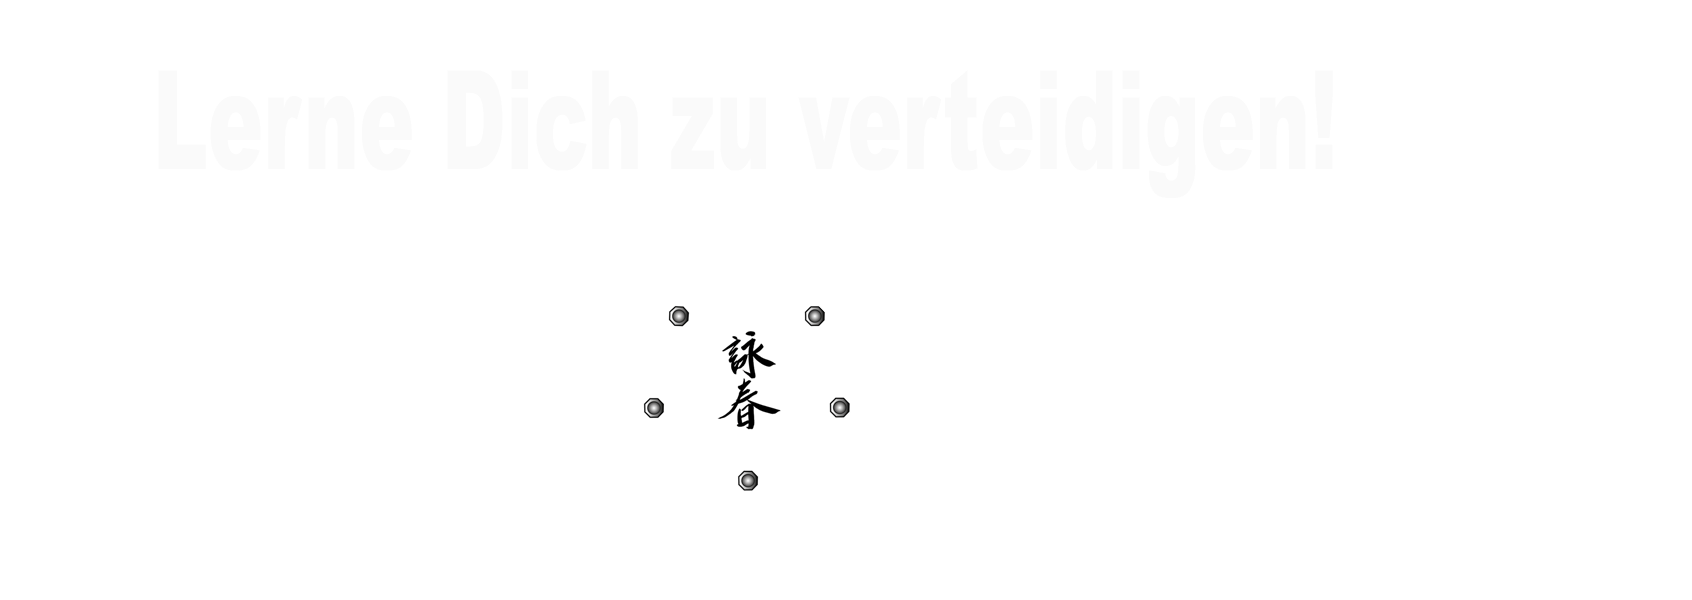 Selbstverteidigung & Kampfkunst in Heidelberg